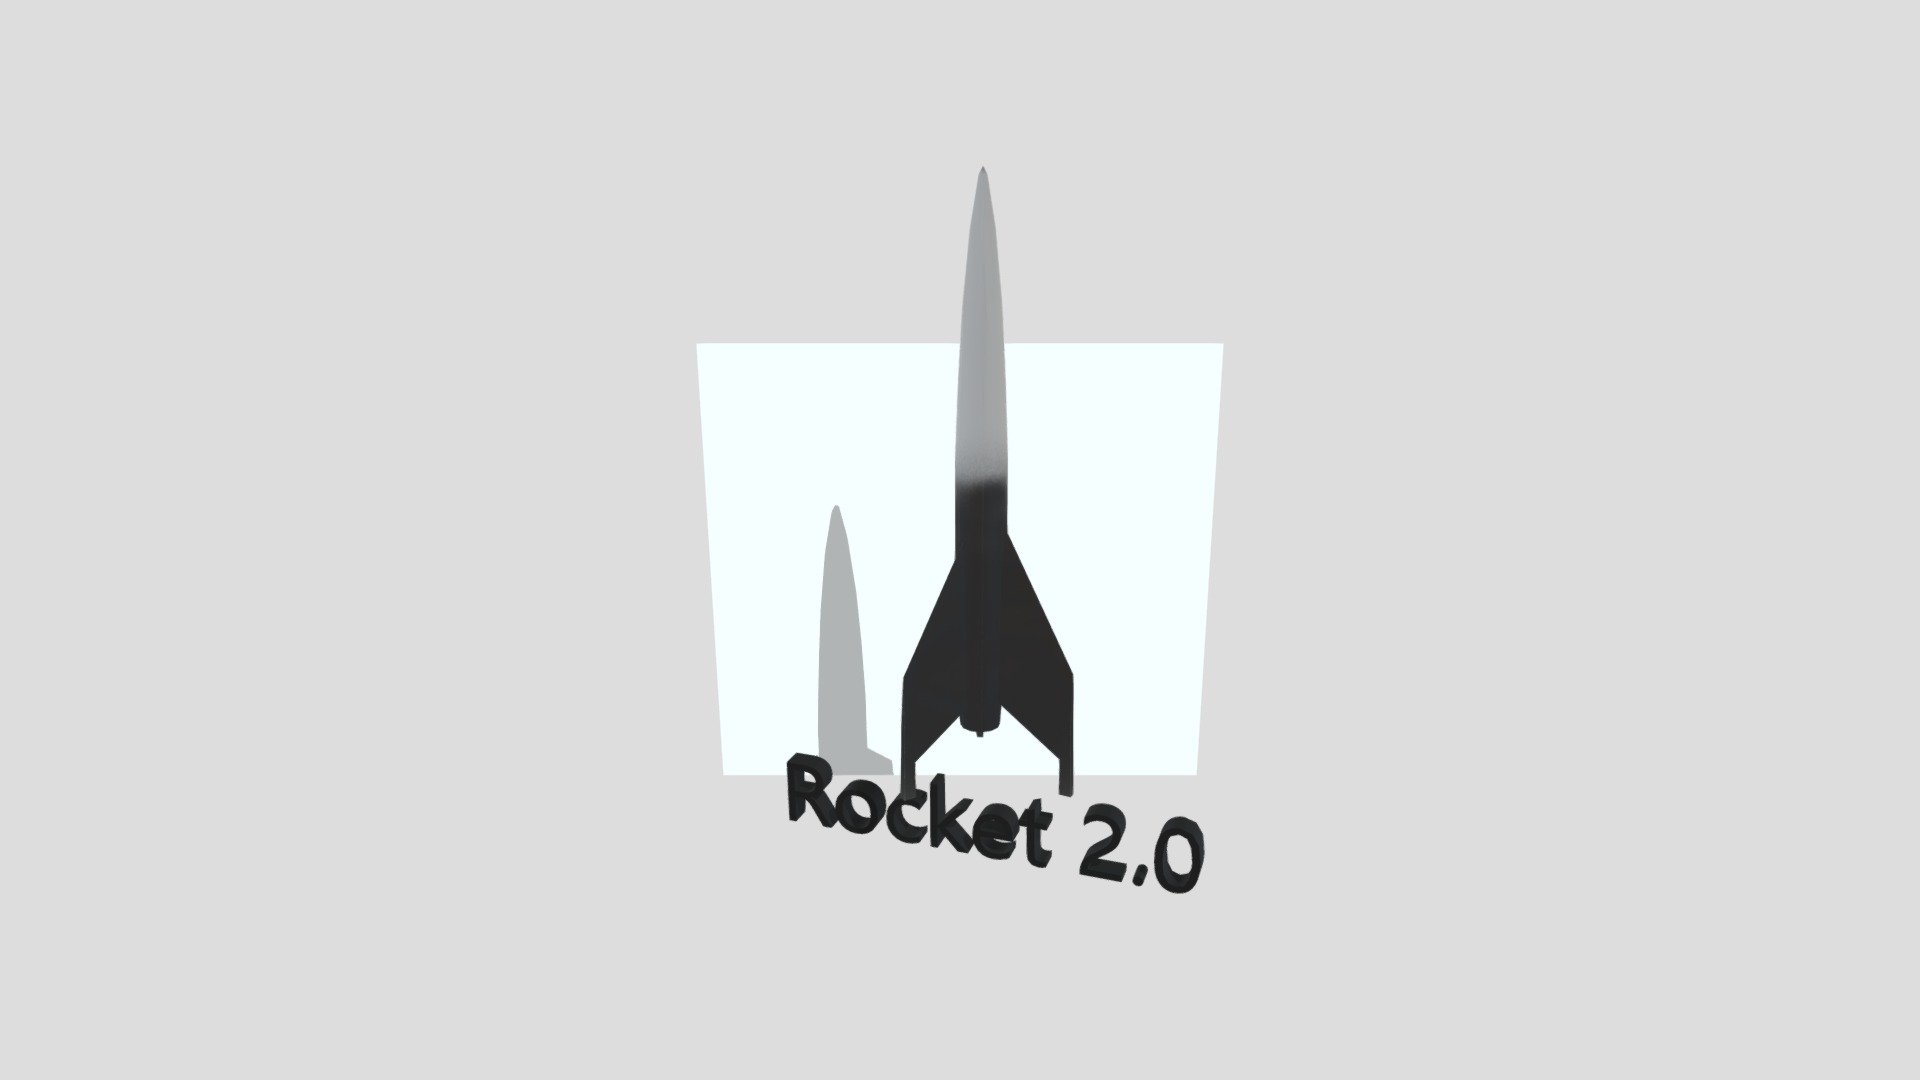 Luke J 3d Project B Lack Rocket